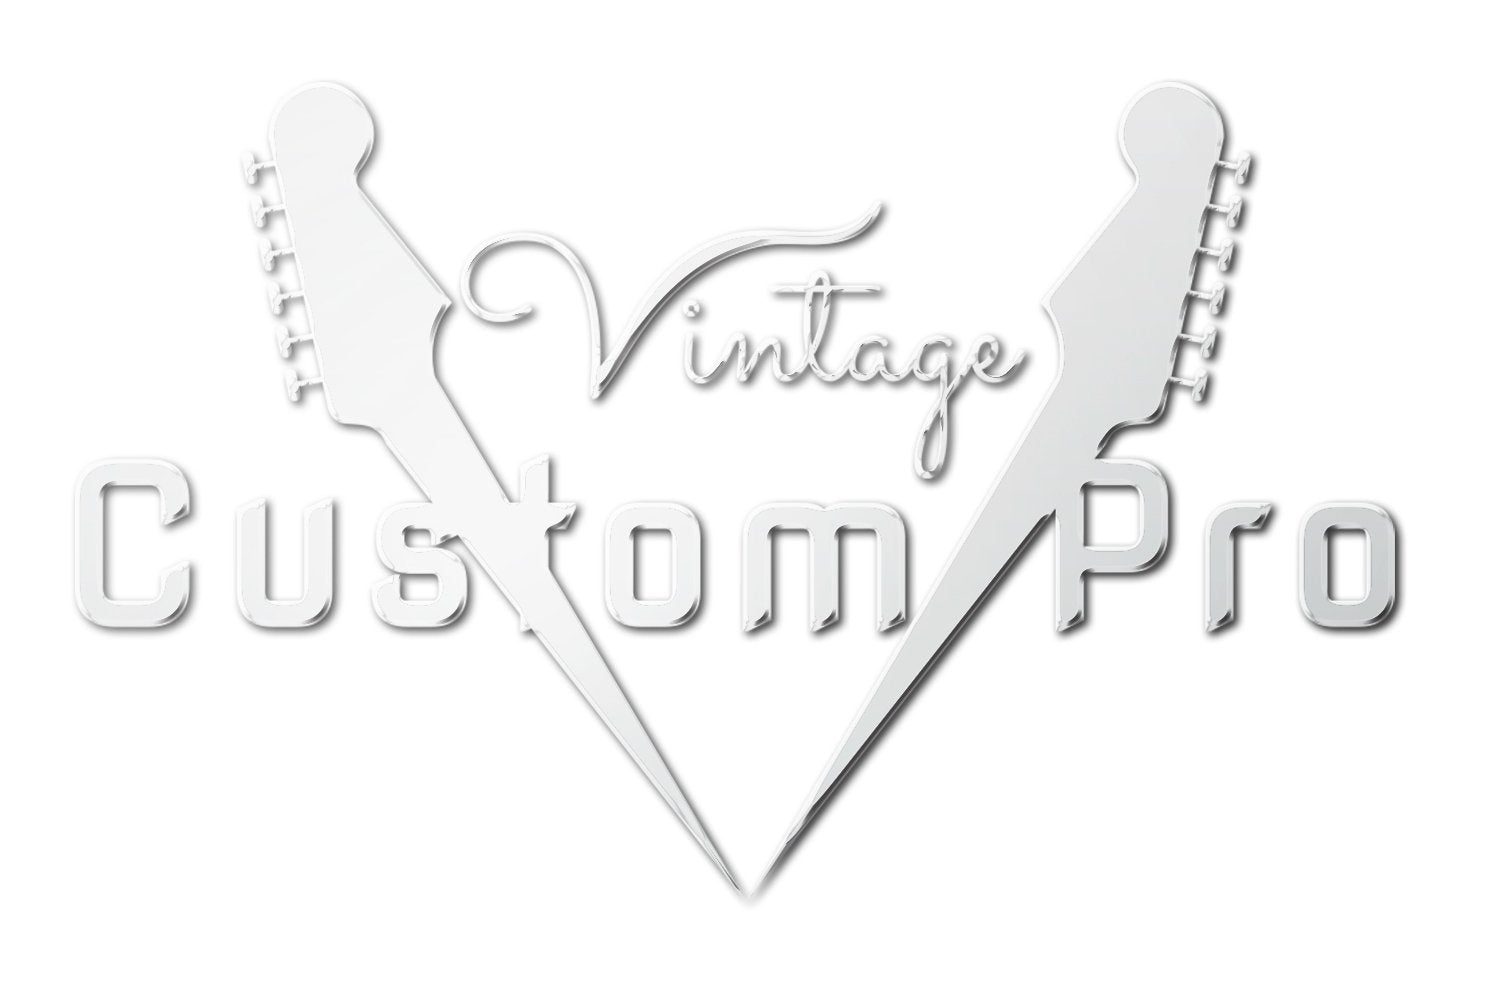 Vintage* V100MU Electric Guitar, Electric Guitar for sale at Richards Guitars.